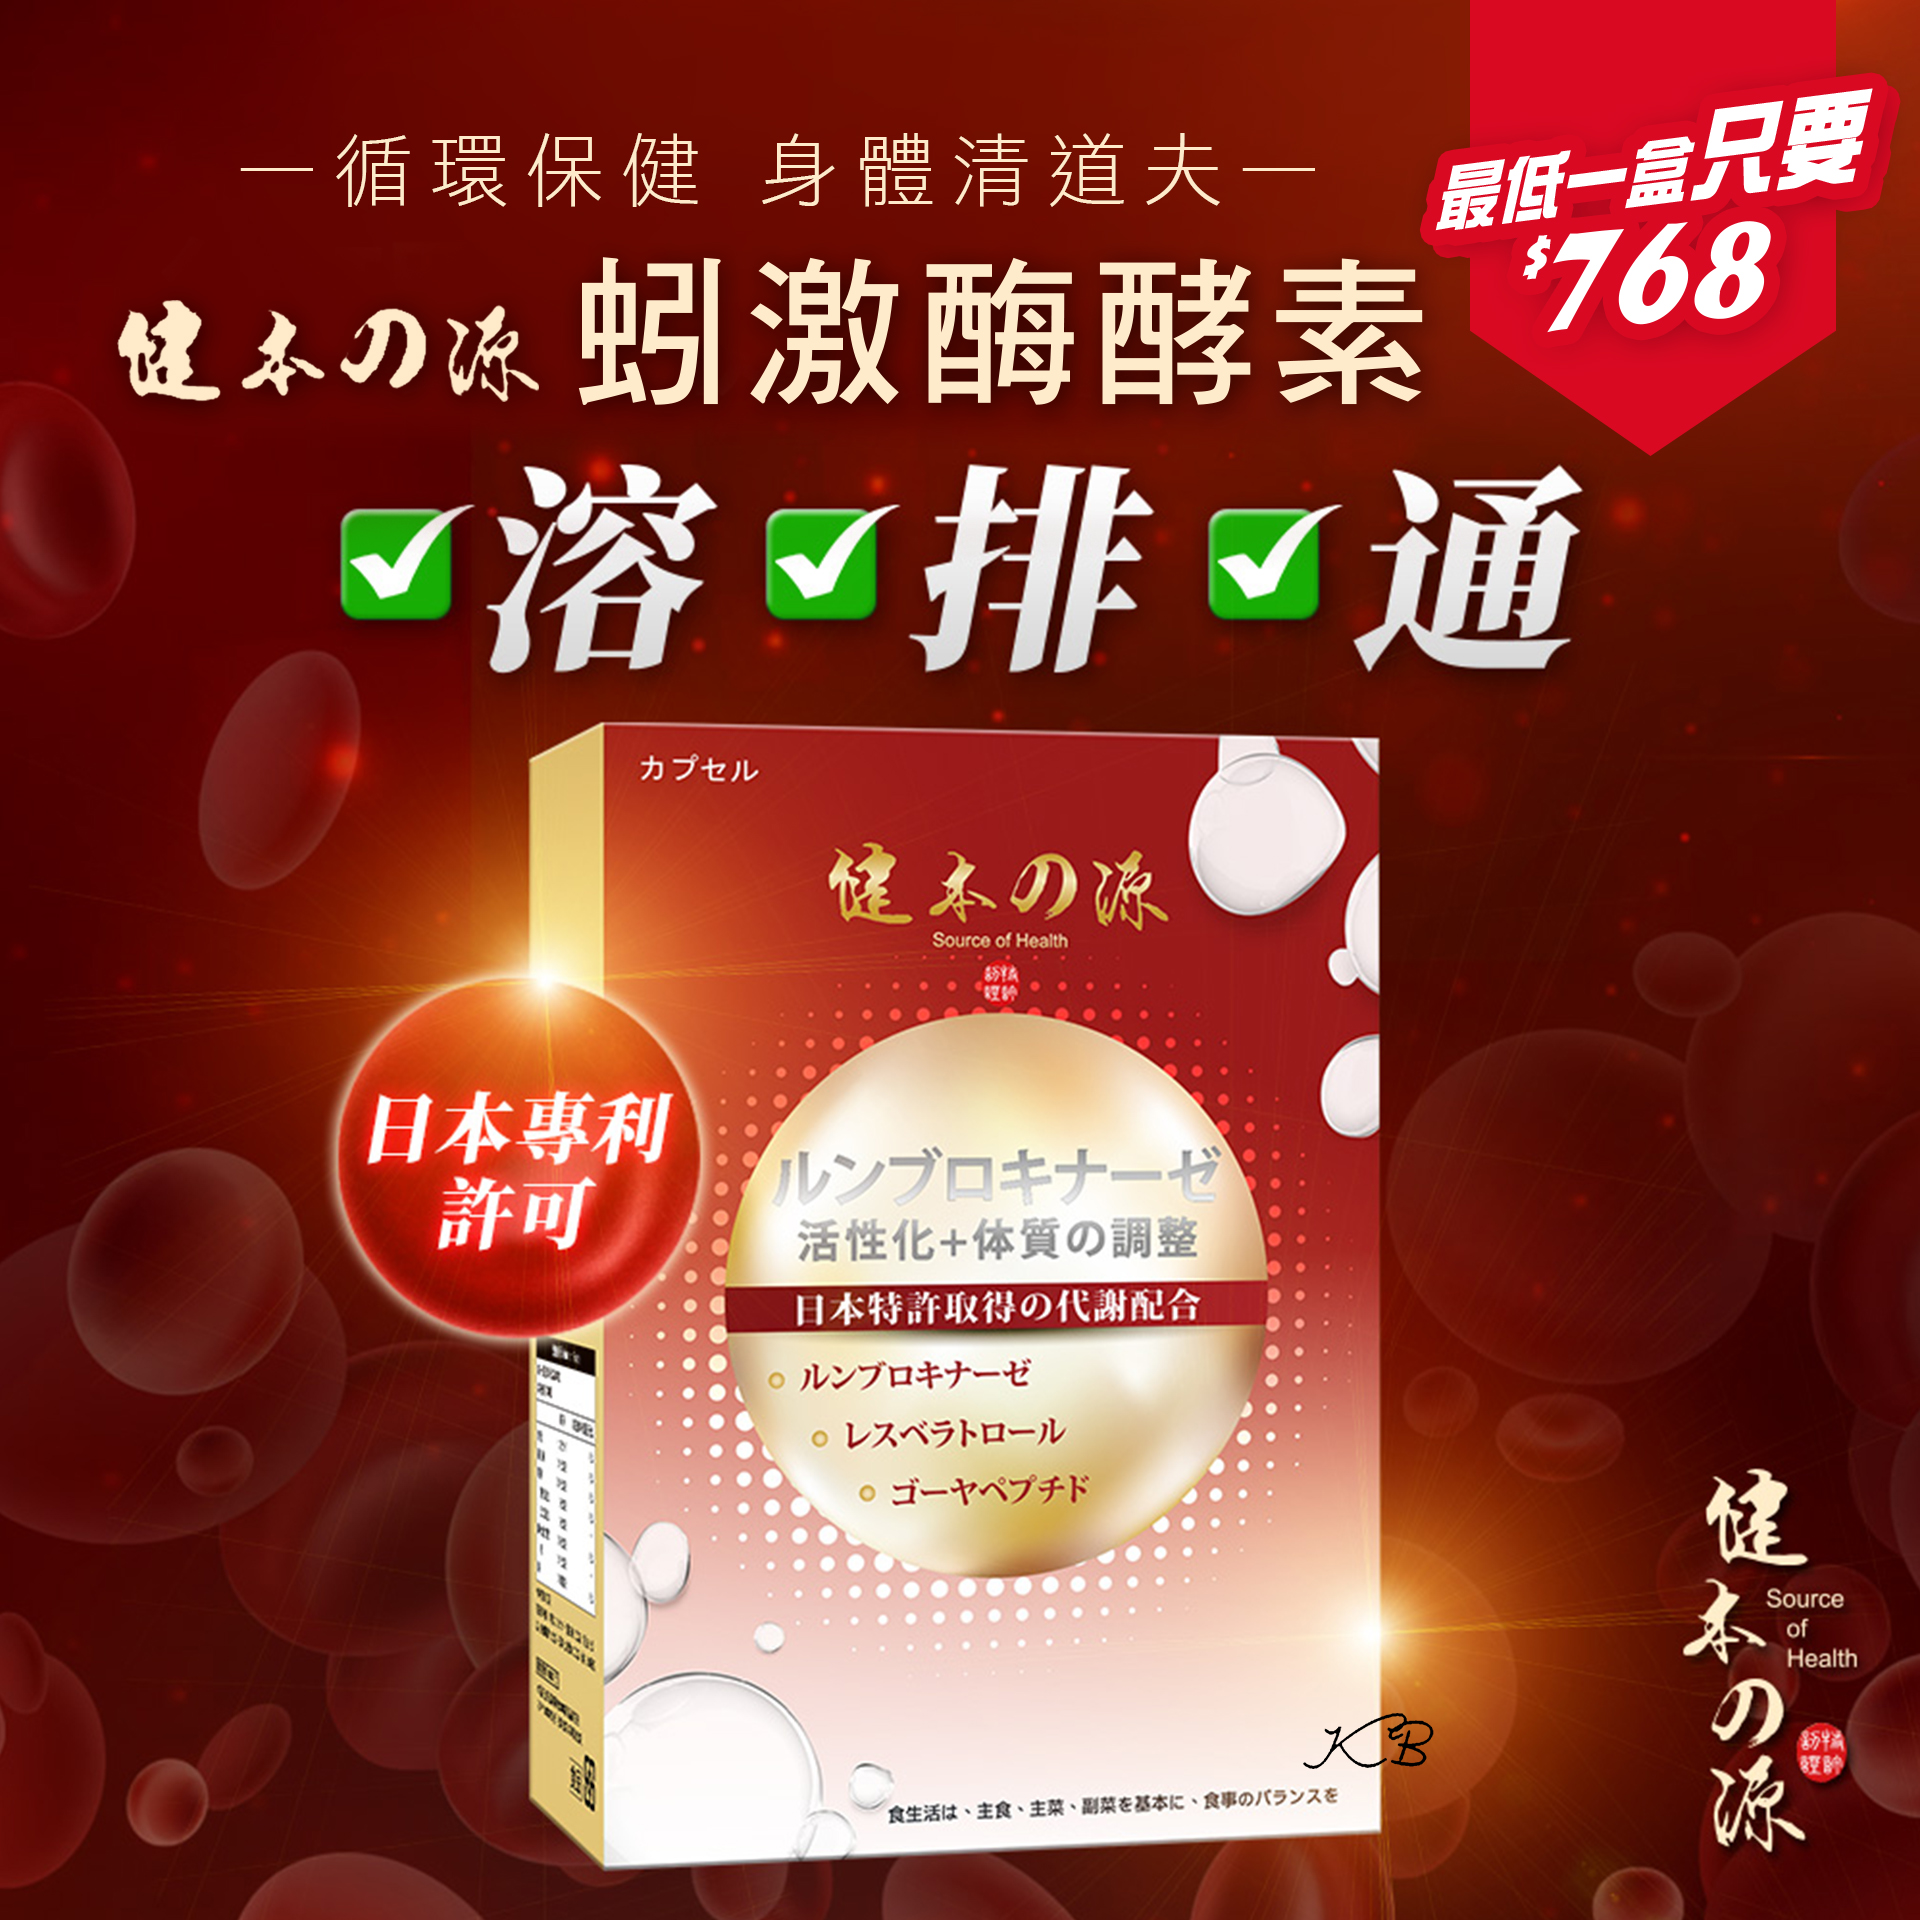 健本之源 - 日本蚓激酶激活速溶膠囊 ( 30粒/盒 )《多件優惠》